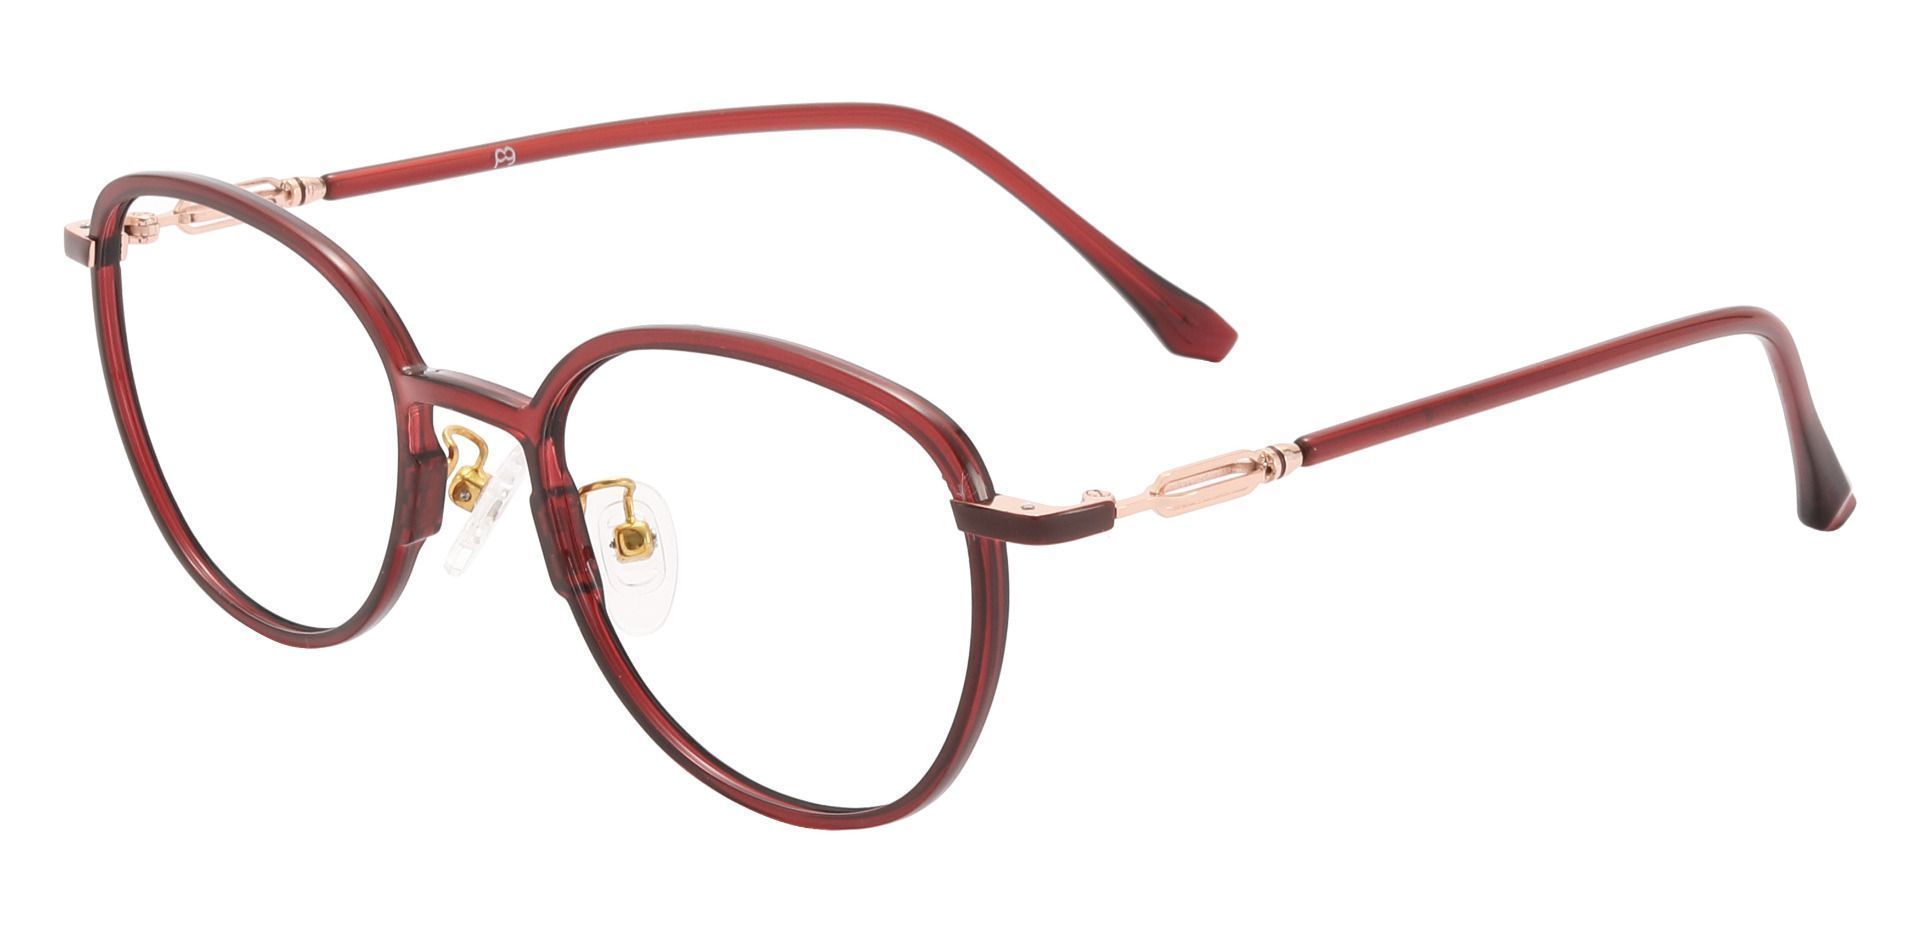 Newton Oval Prescription Glasses - Red